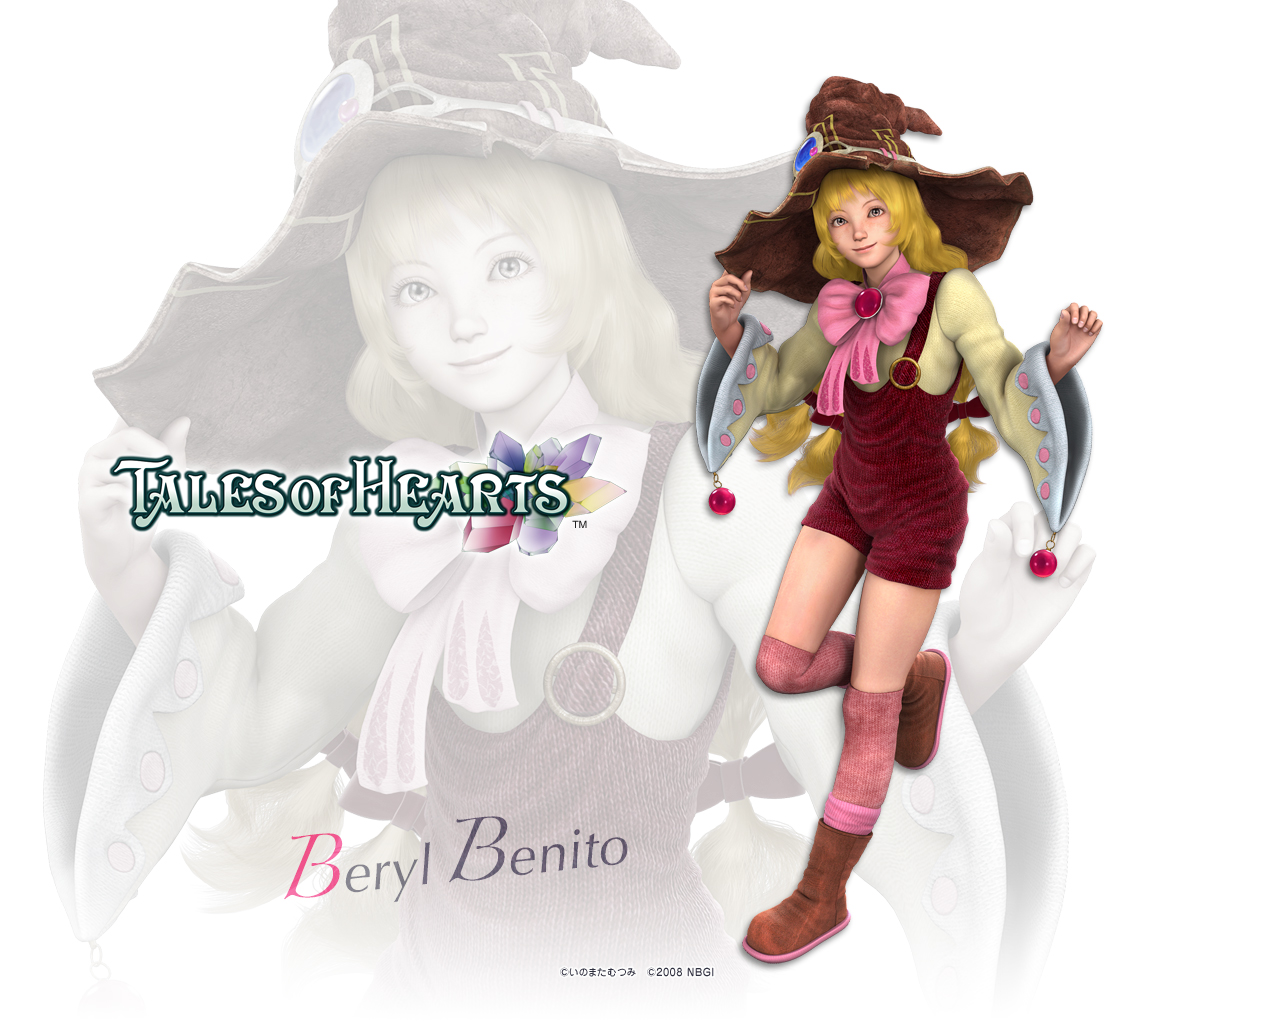 Beryl Benito (CG Version) - 1280x1024
Beryl Benito (CG Version) - 1280x1024
